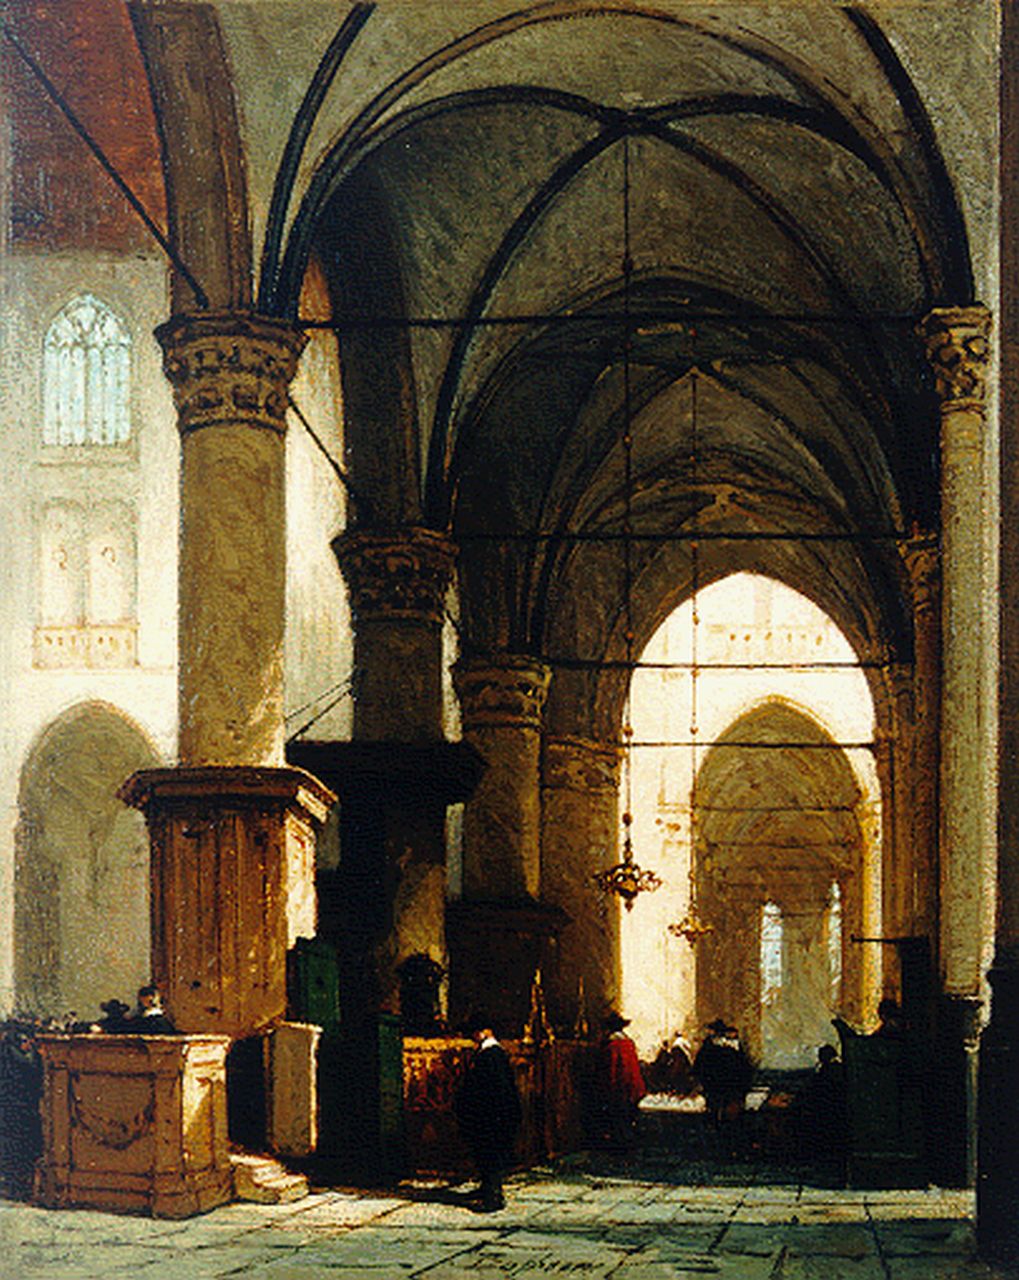 Bosboom J.  | Johannes Bosboom, Interior of the 'Grote of St. Laurenskerk', Alkmaar, oil on panel 34.2 x 27.7 cm, signed l.c. and painted between 1865-1870